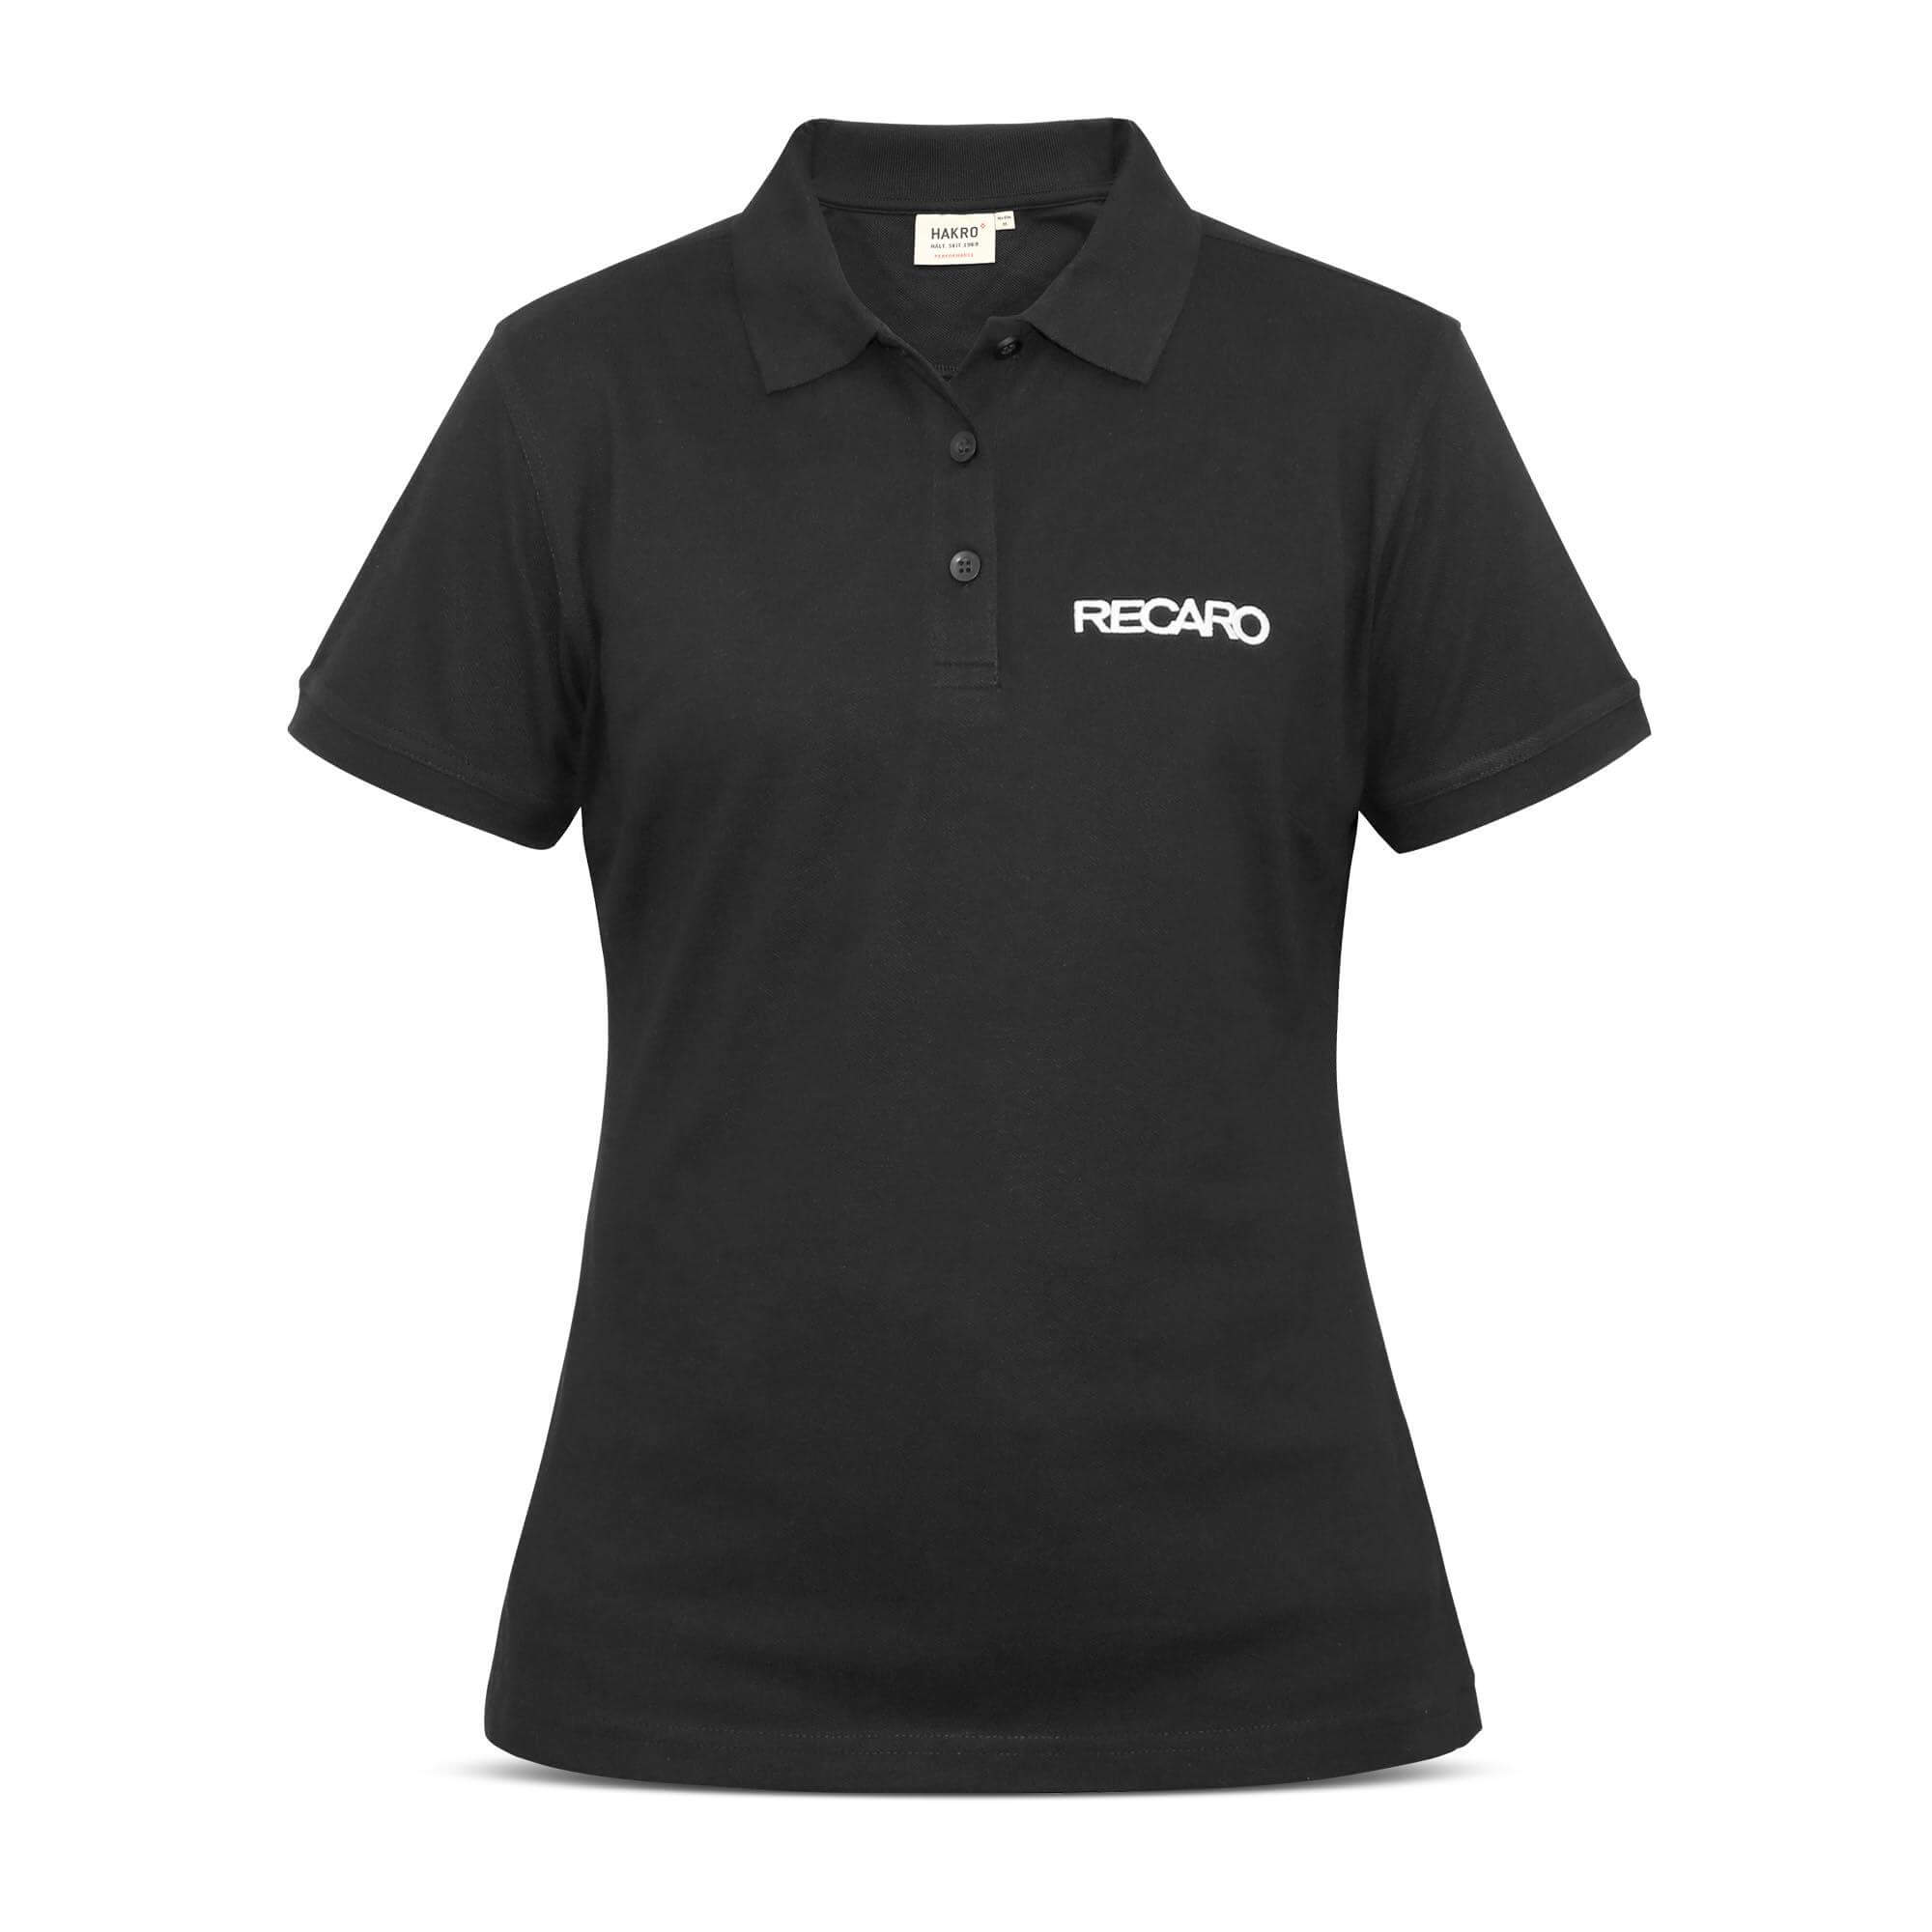 RECARO 21000378 Polo shirt ladies, size XL Photo-0 